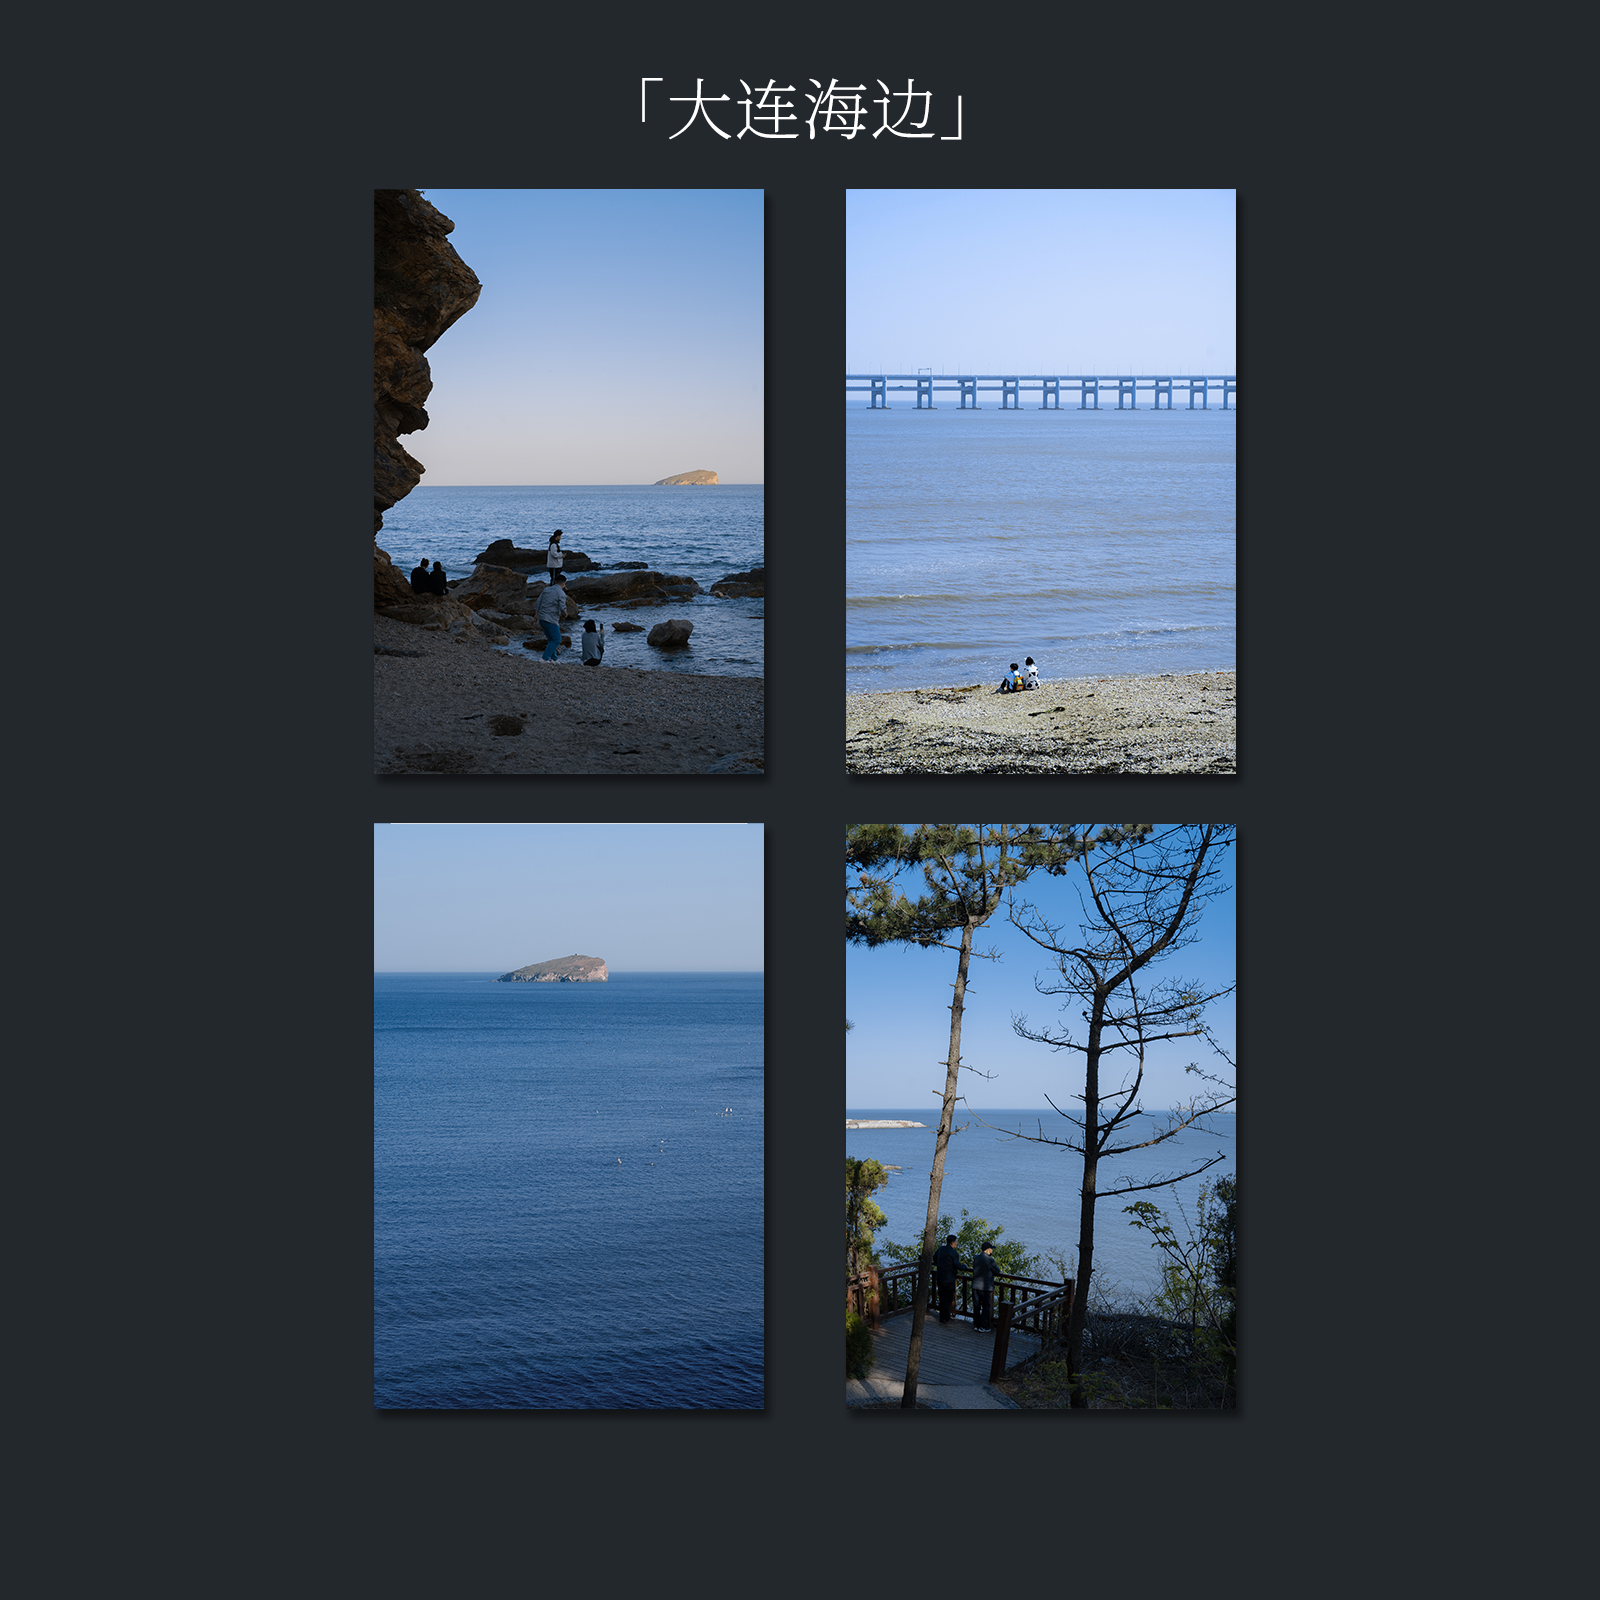 七号原创「大连海边」摄影明信片辽宁海边旅游礼品装饰纪念风景